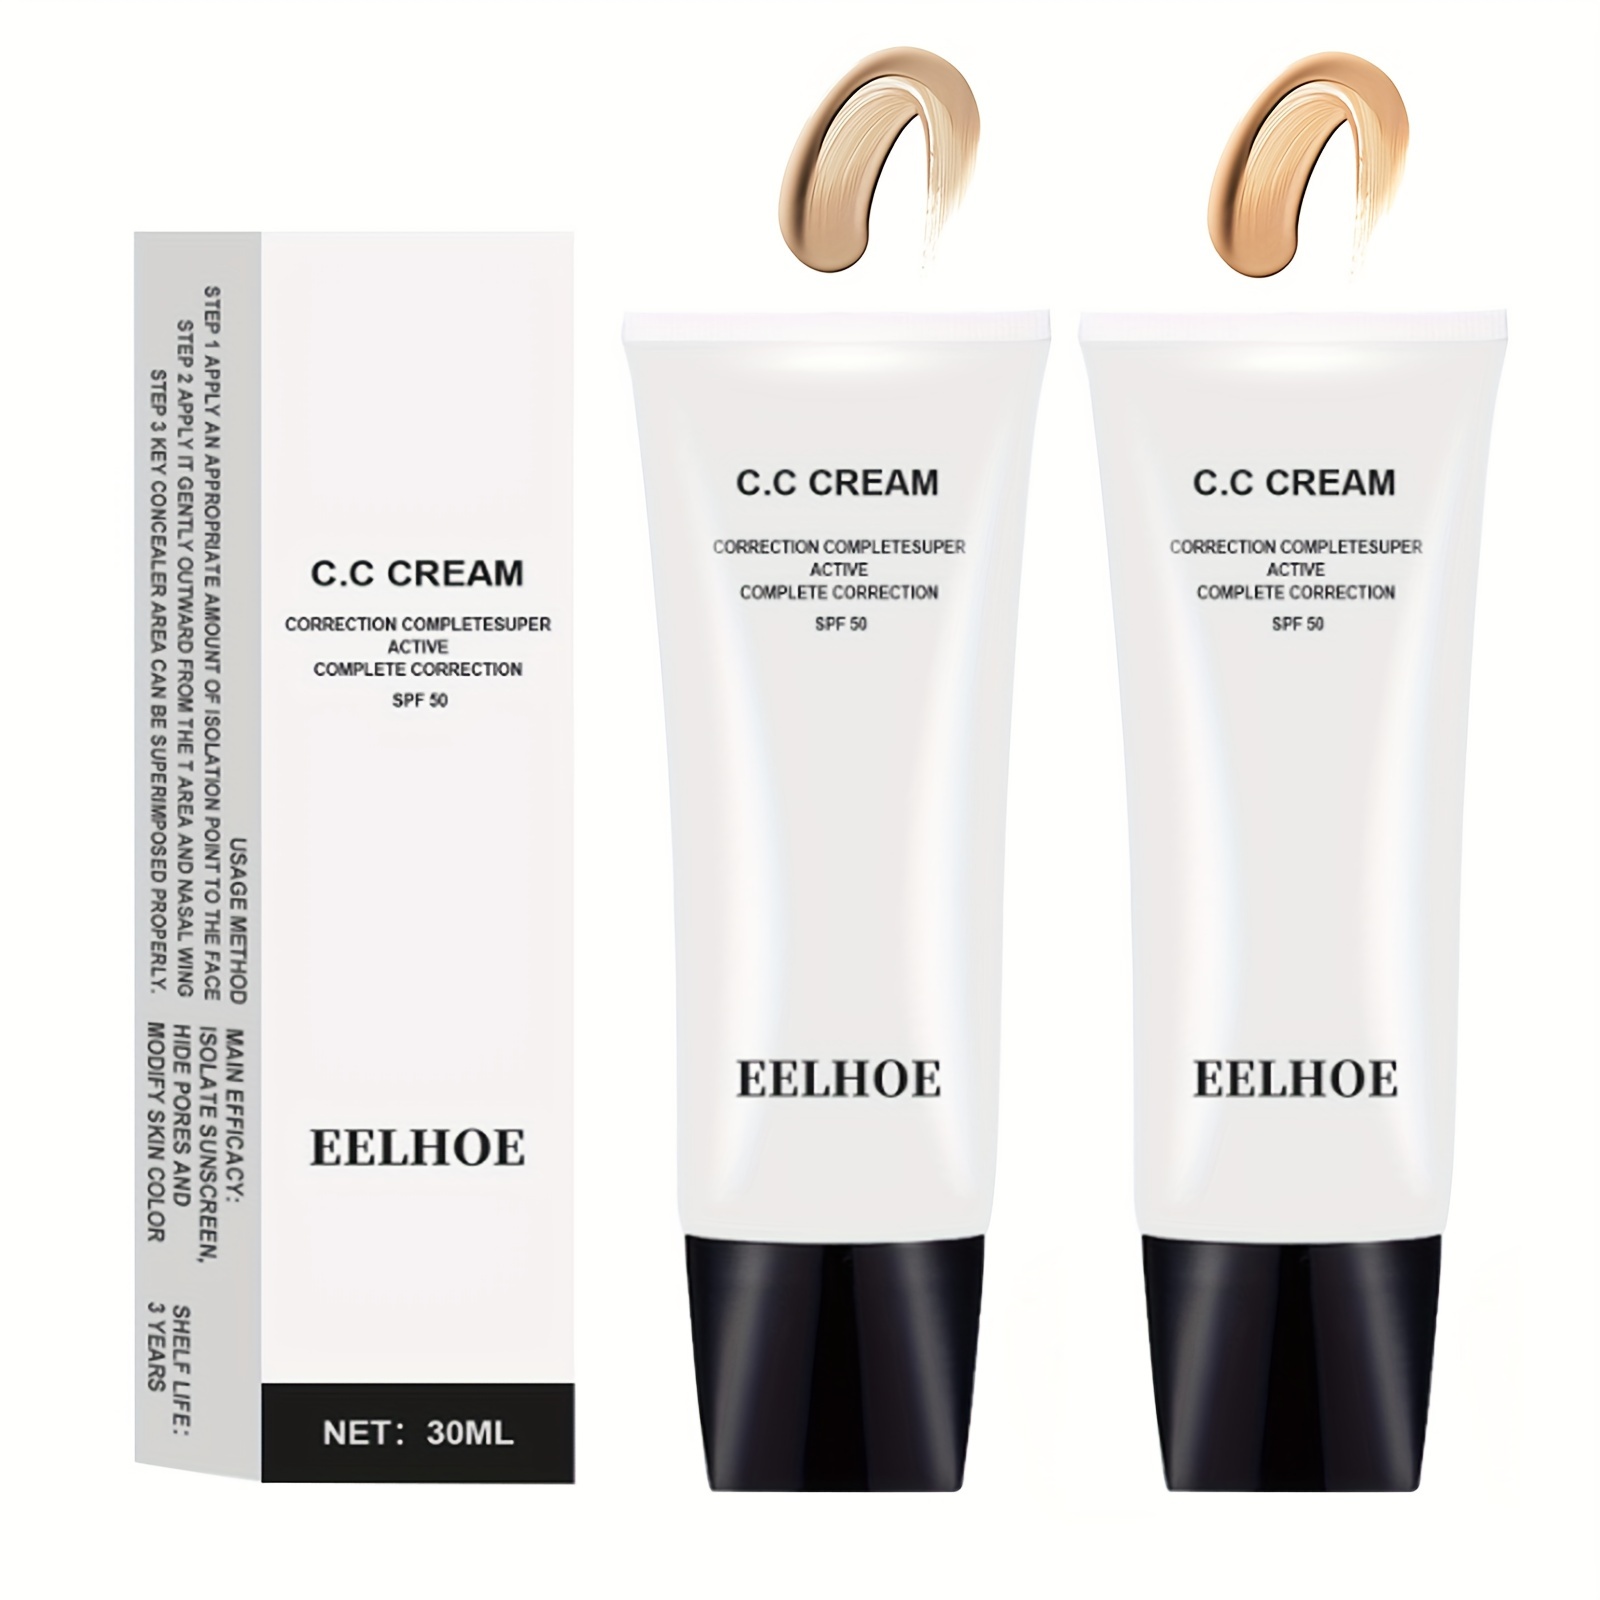 CC Cream Super Active Complete Correction SPF 50 30ml – Klik Beauty Shop